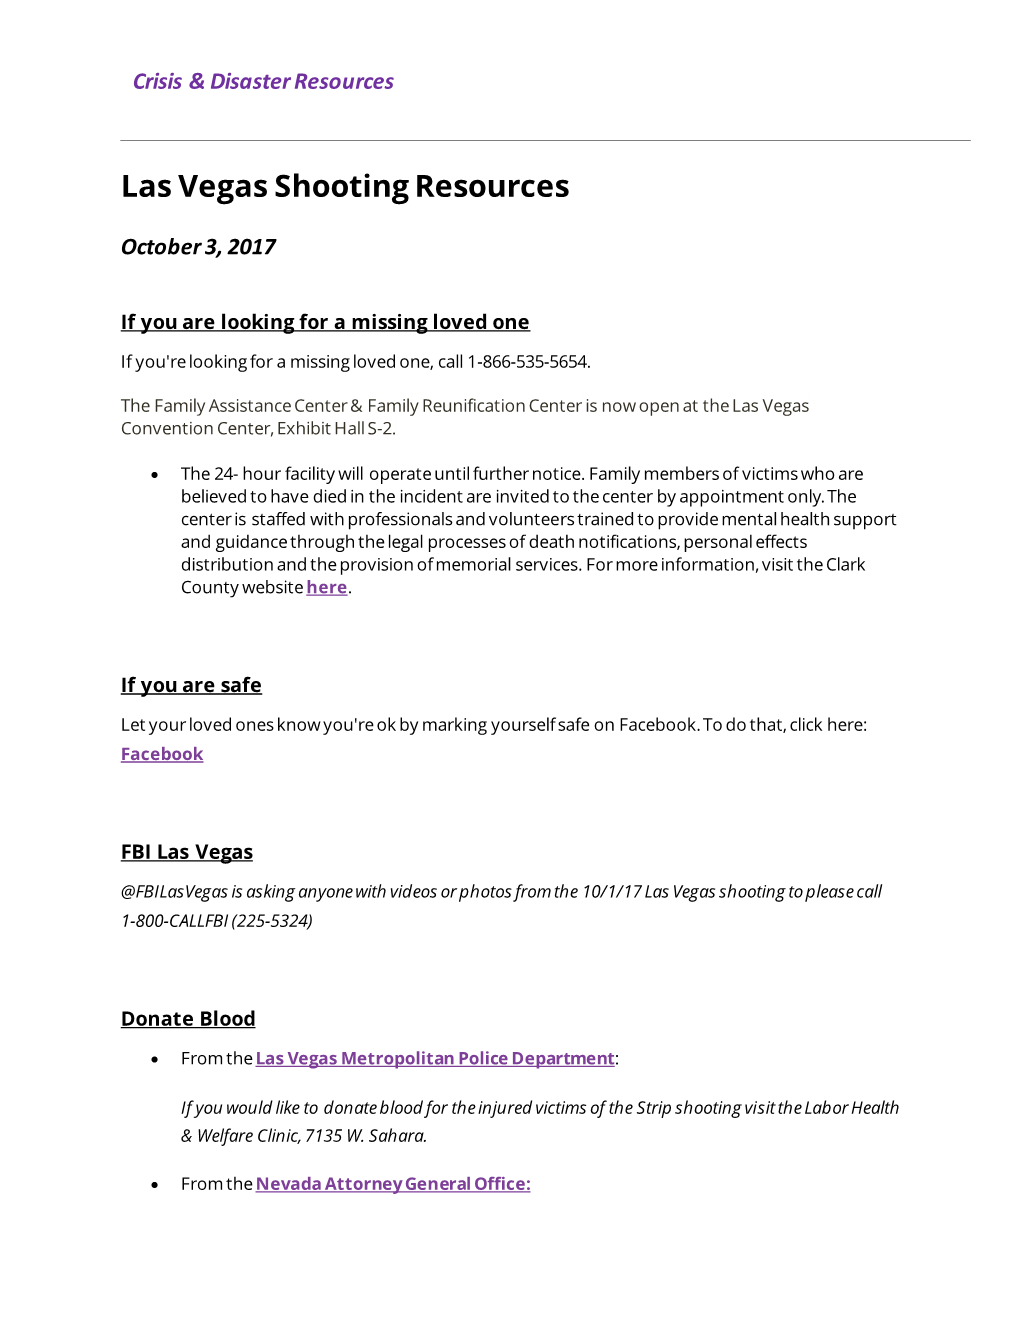 Las Vegas Shooting Resources